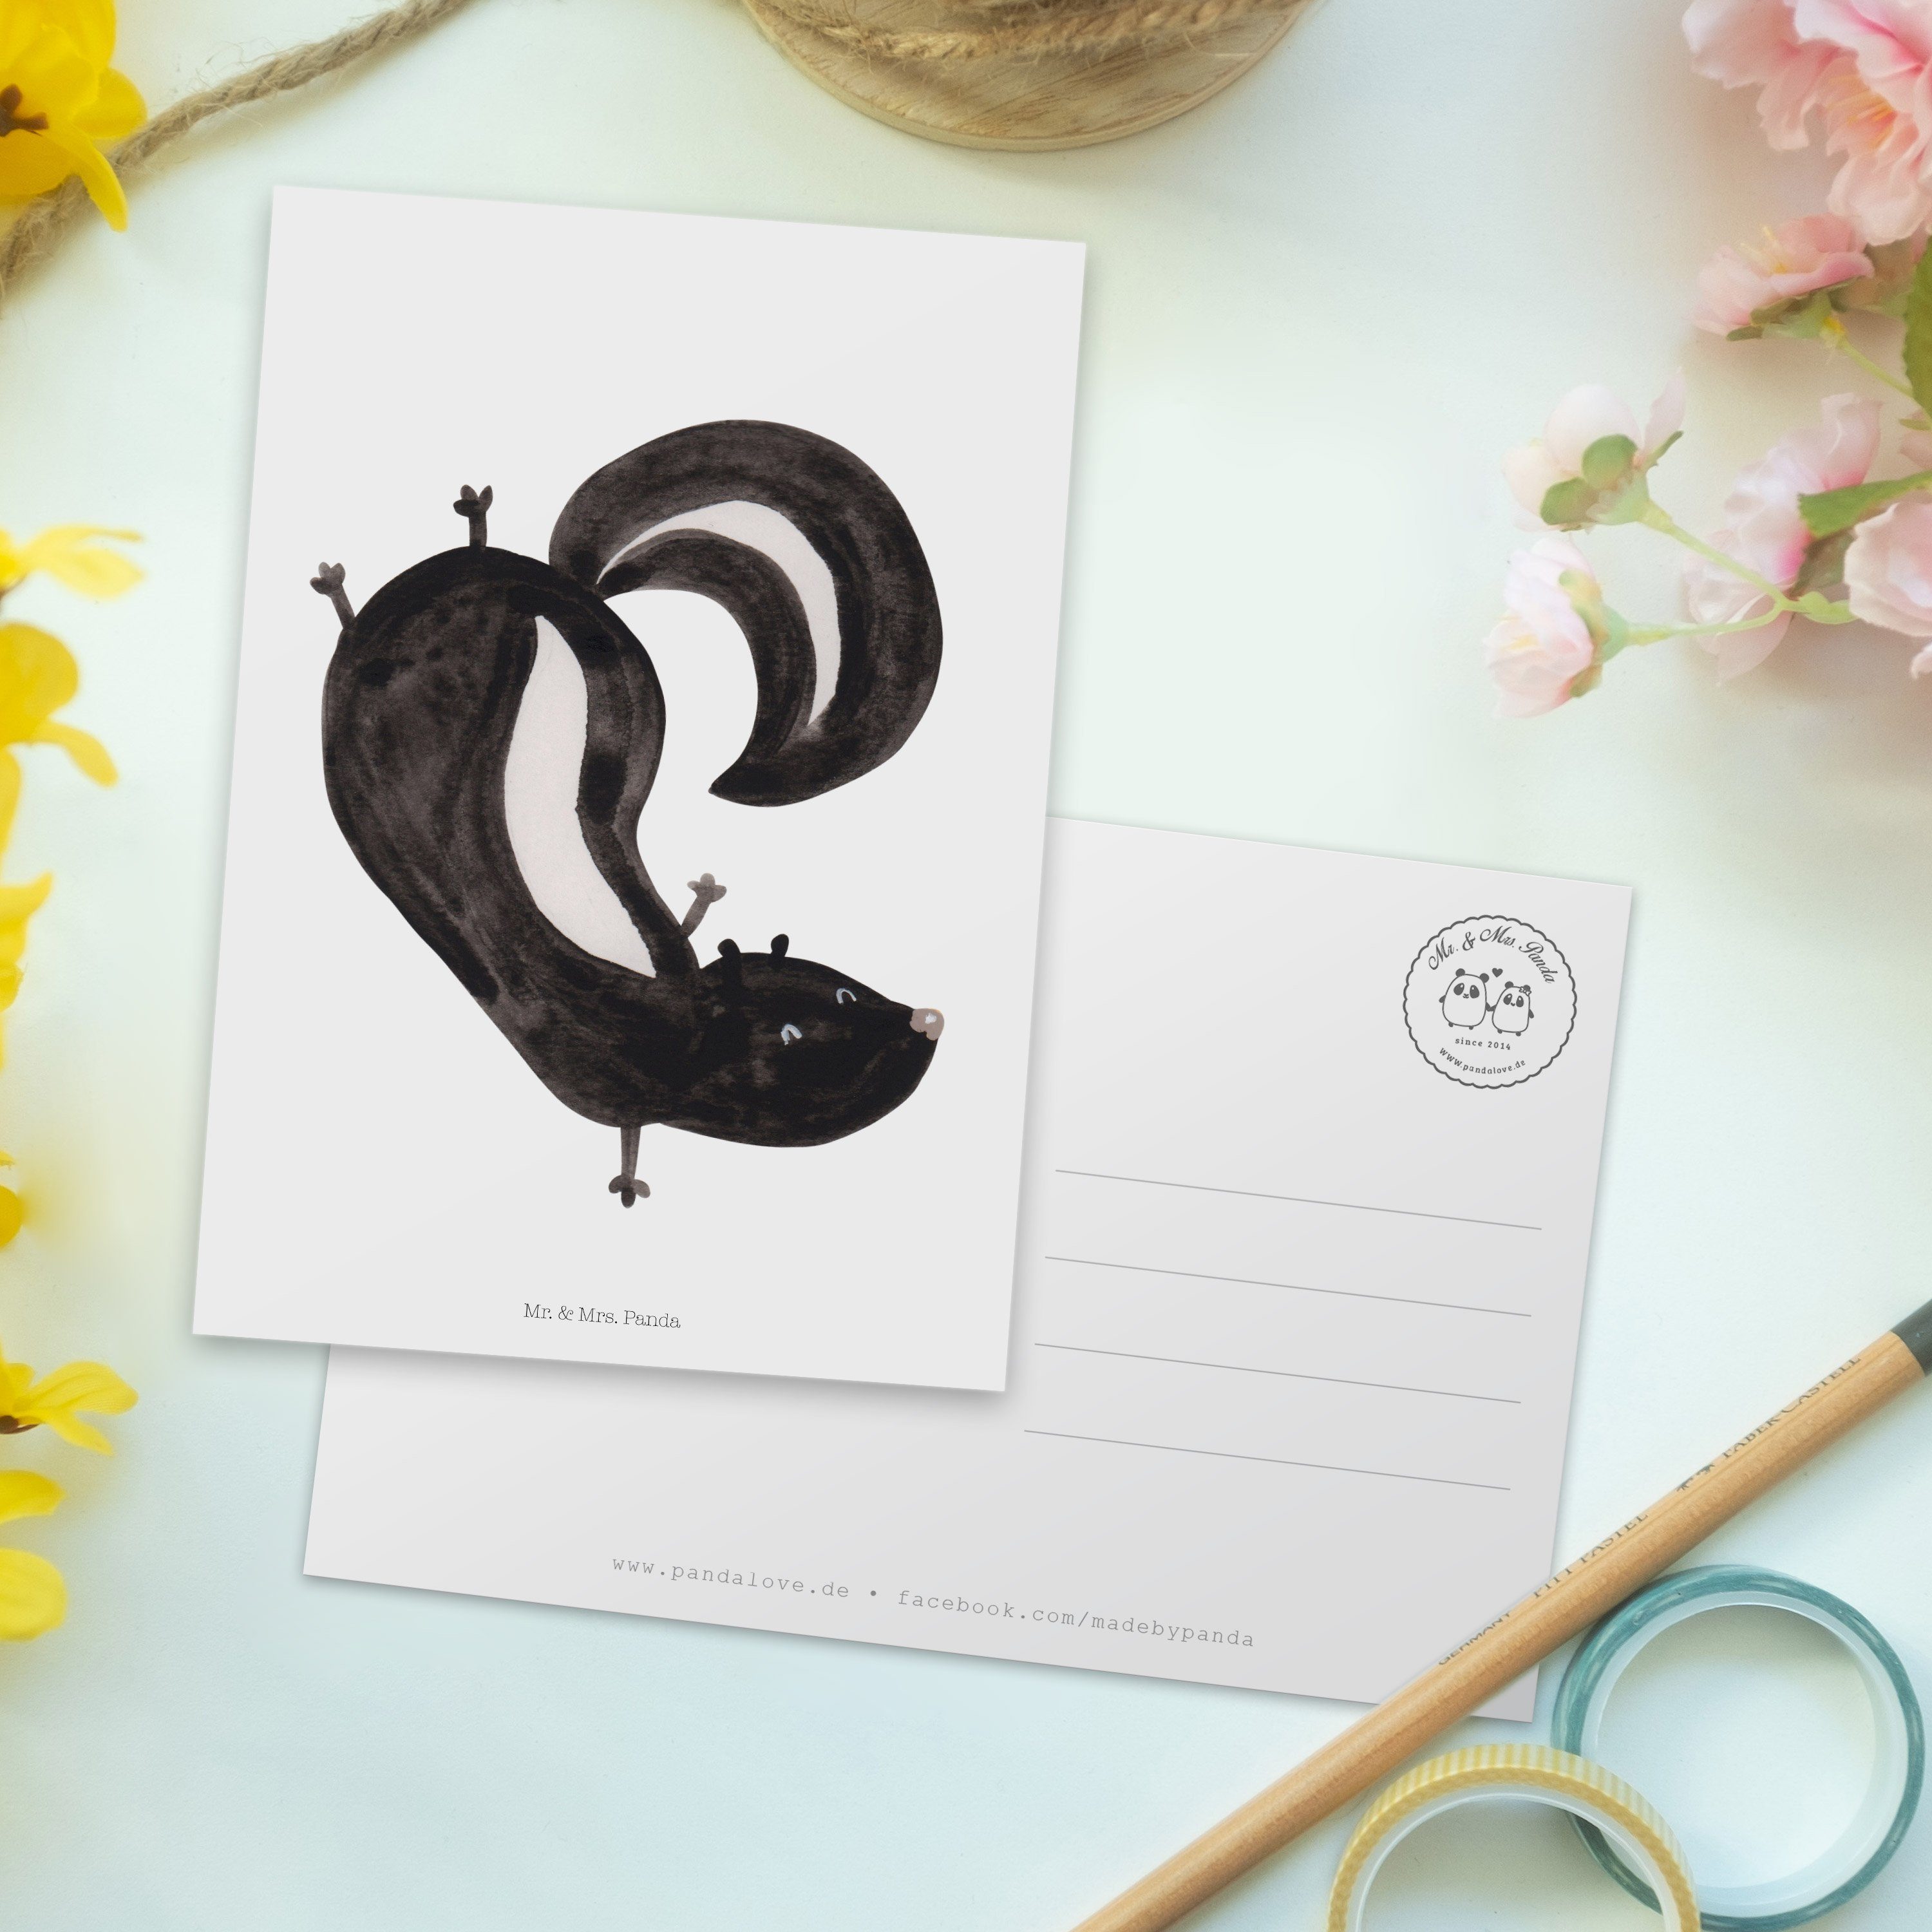 Mr. & Mrs. Panda - Handstand Karte, Dankeskarte Einladung, Postkarte Geschenk, - Weiß Stinktier